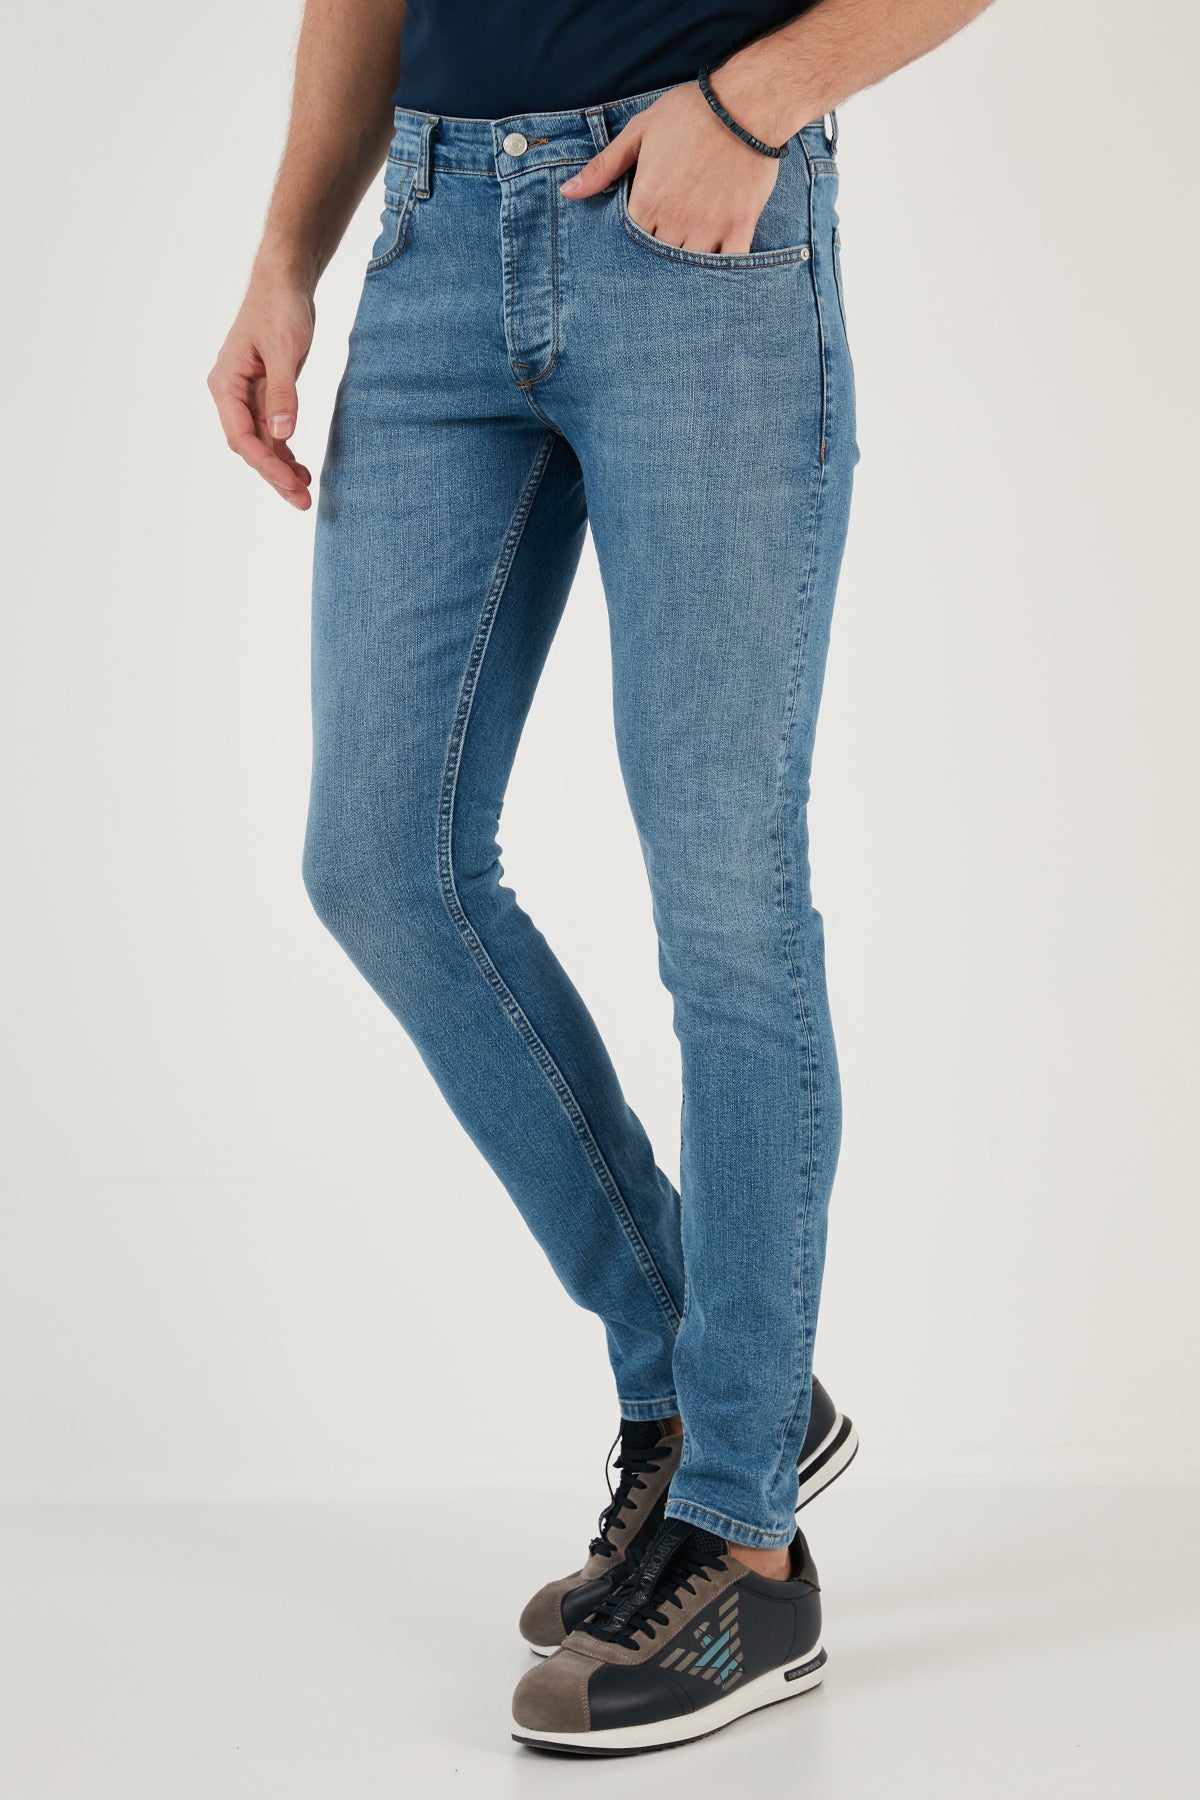 Buratti Pamuklu Normal Bel Slim Fit Dar Paça Jeans Erkek Kot Pantolon 1122J651NAPOLI MAVİ